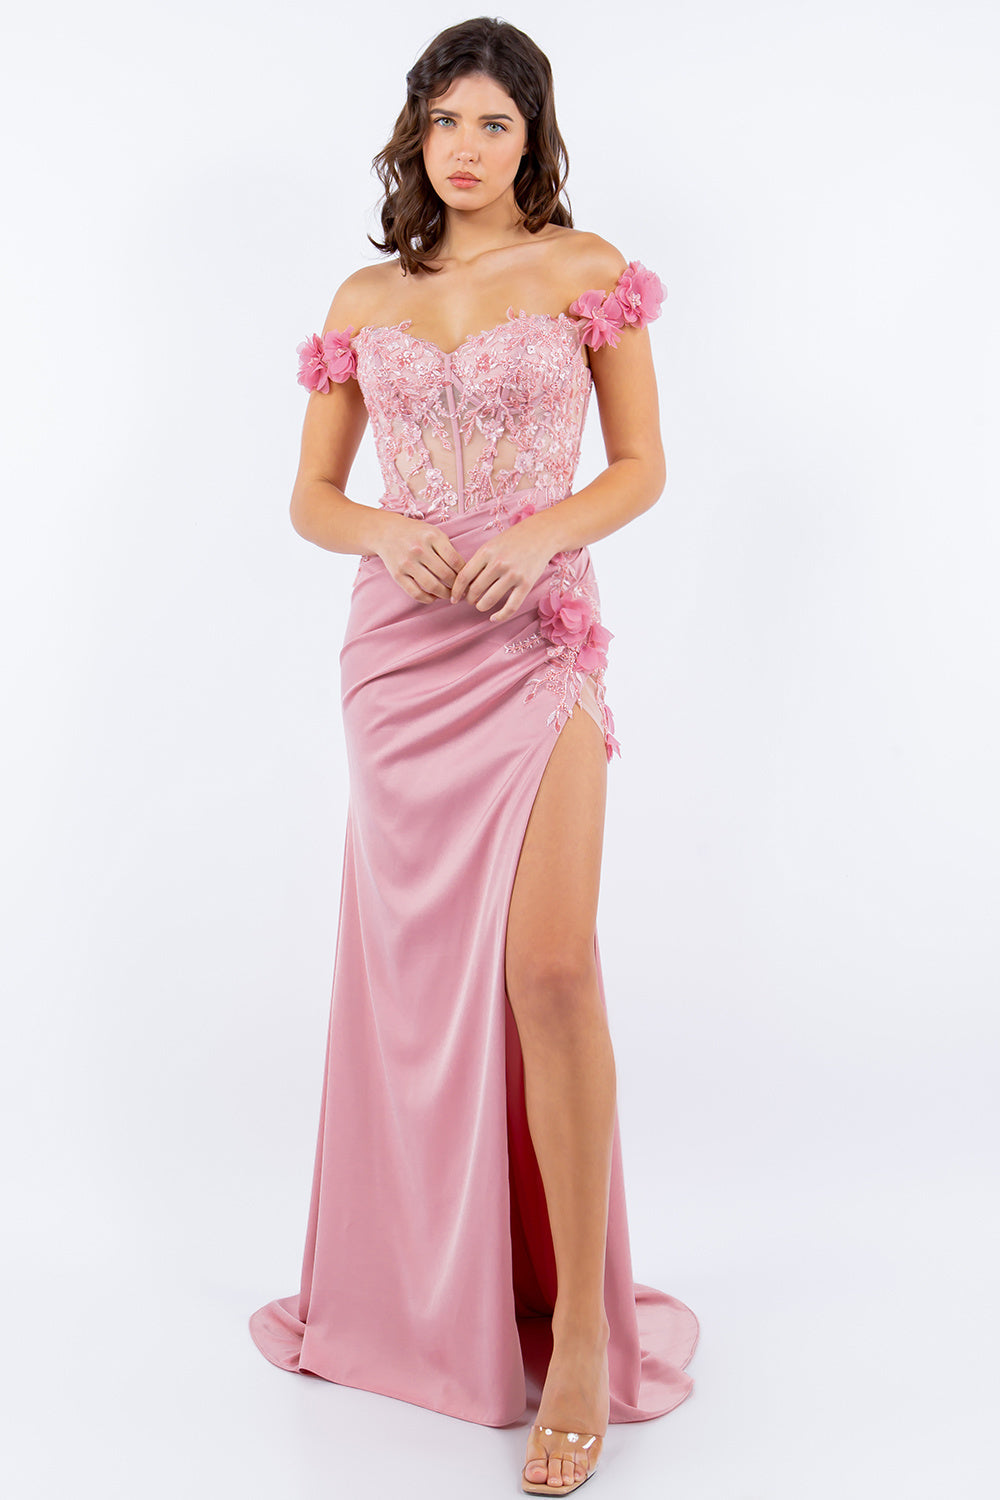 3D Floral Applique Off Shouler Fitted Skirt Side Slit Long Prom Dress CU8050J Elsy Style Prom Dress